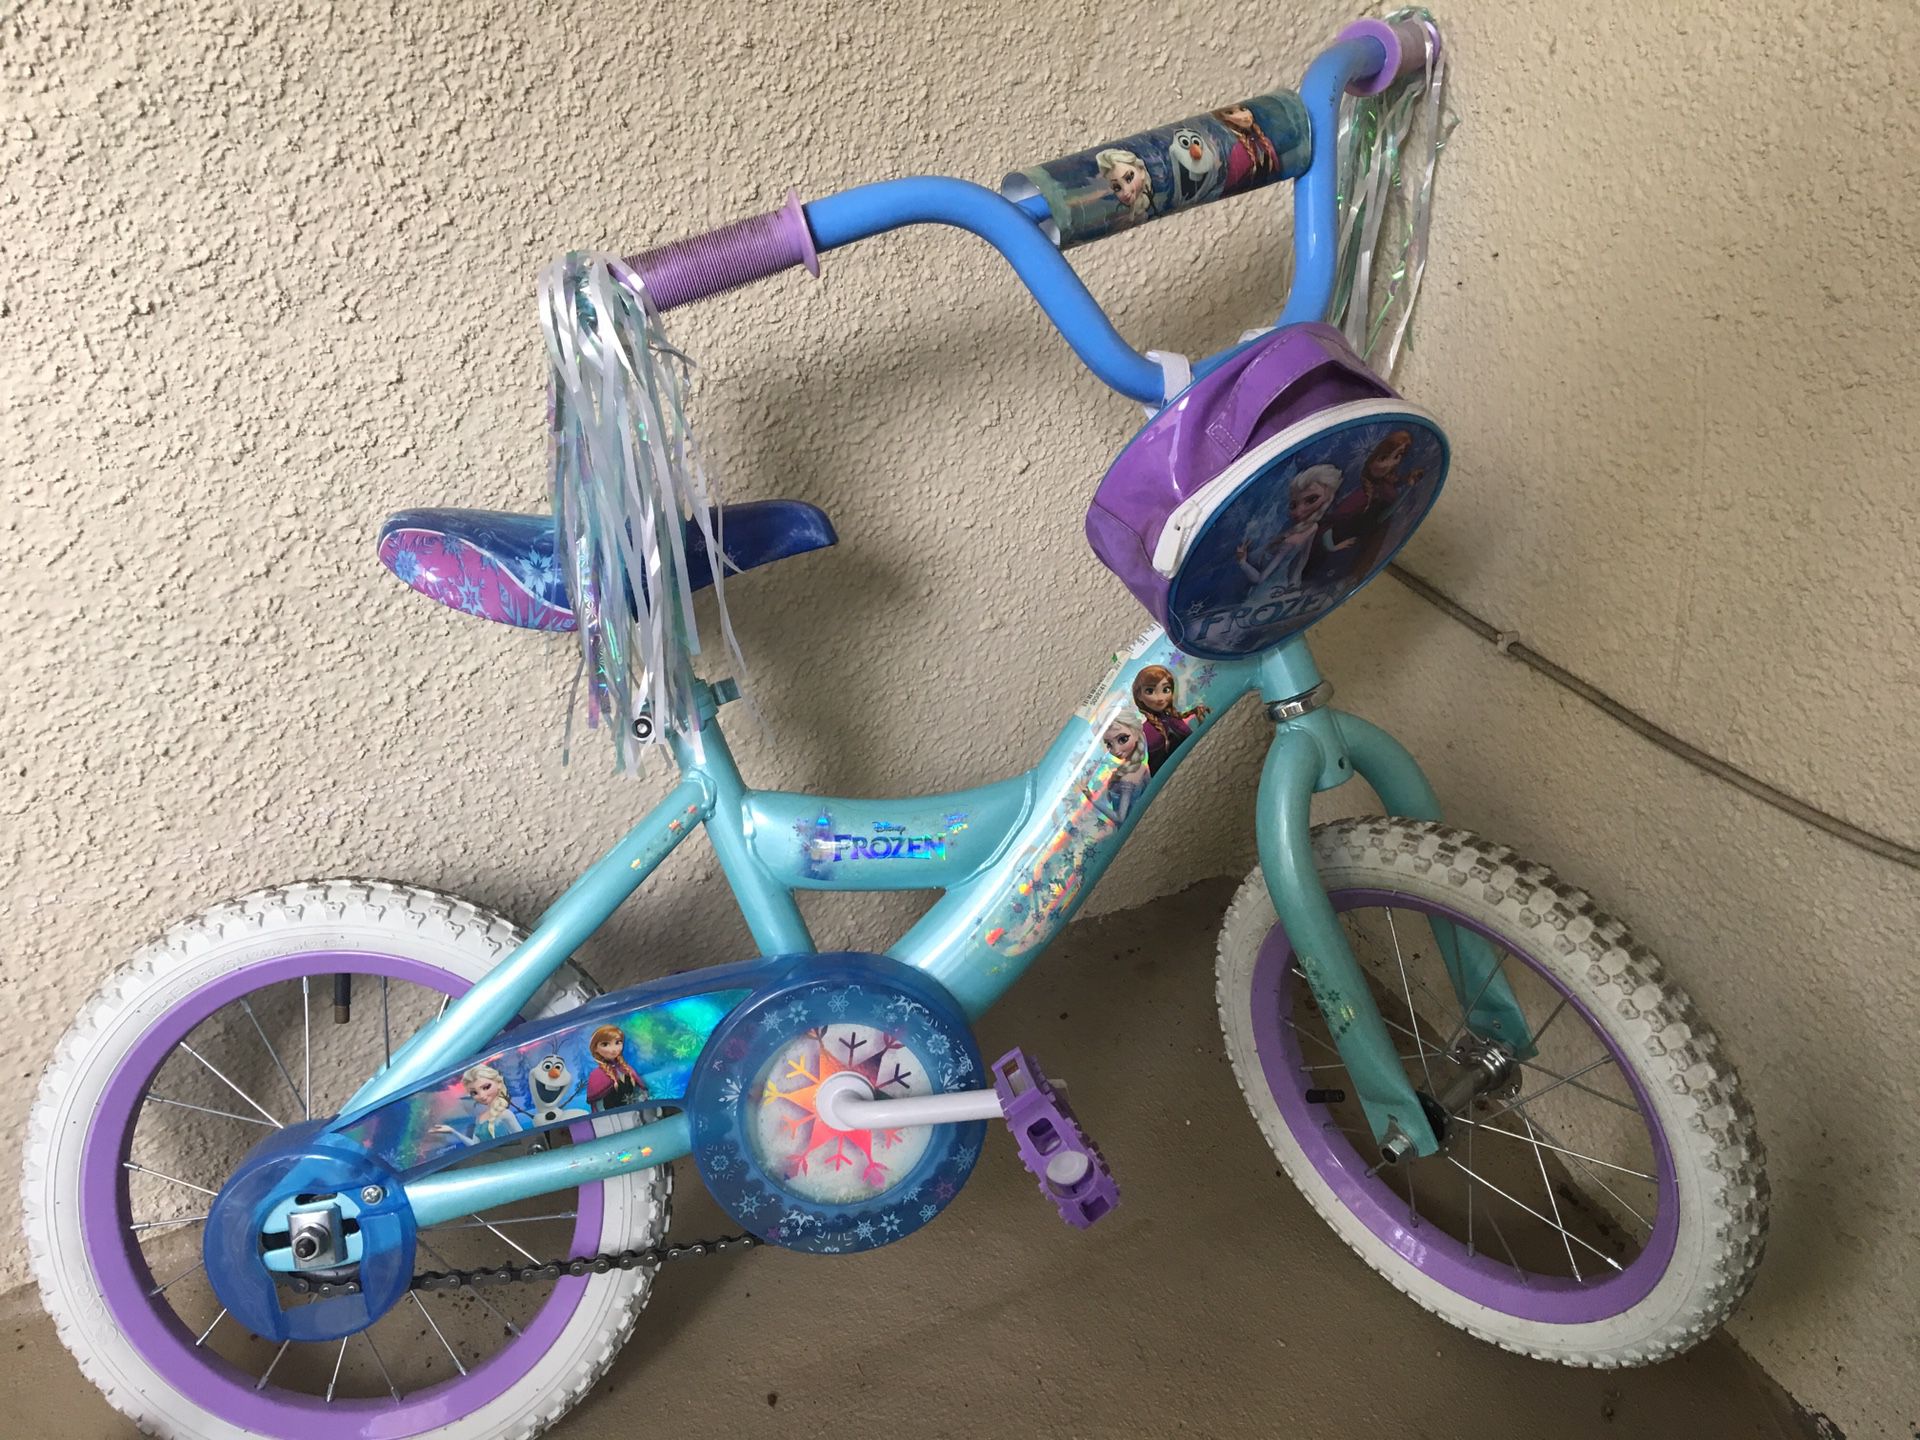 Huffs Frozen Disney themed kids bike